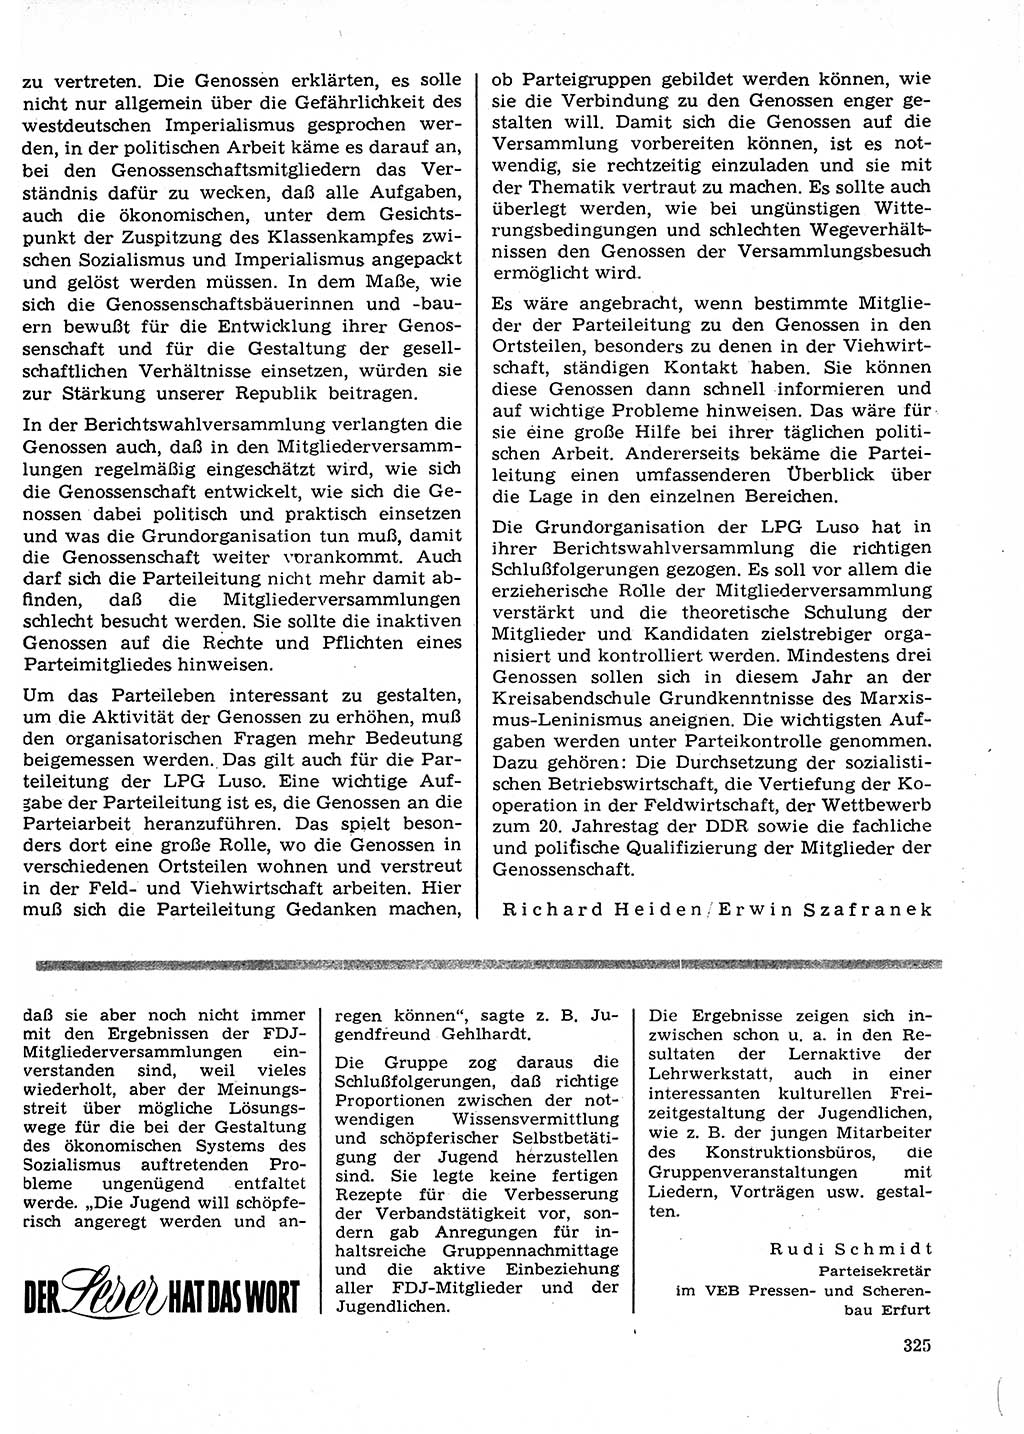 Neuer Weg (NW), Organ des Zentralkomitees (ZK) der SED (Sozialistische Einheitspartei Deutschlands) für Fragen des Parteilebens, 23. Jahrgang [Deutsche Demokratische Republik (DDR)] 1968, Seite 325 (NW ZK SED DDR 1968, S. 325)